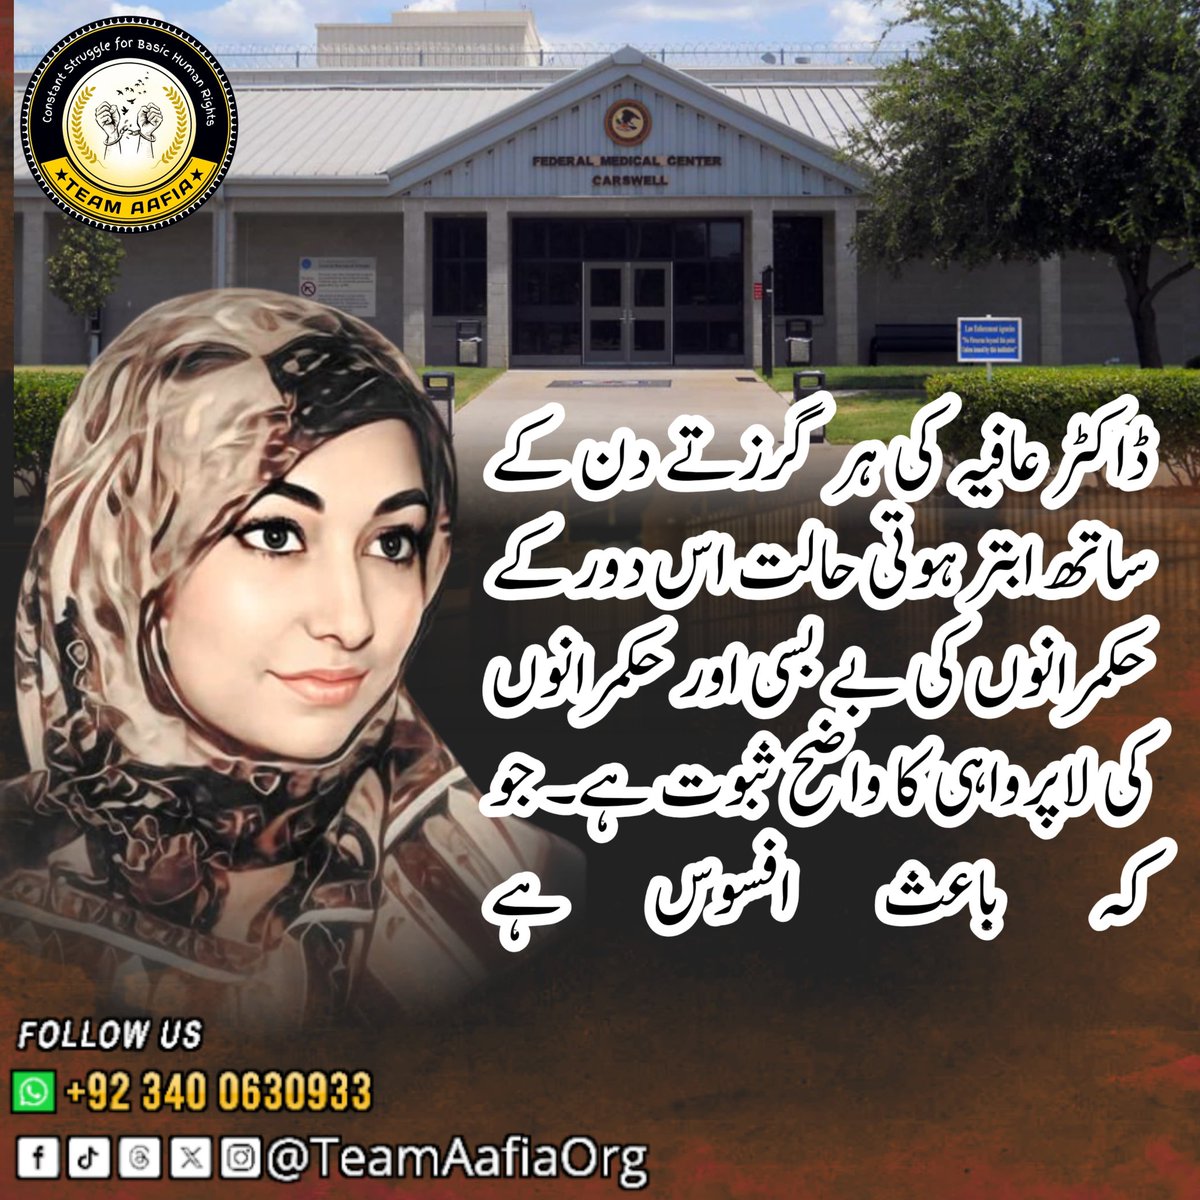 ڈاکٹر عافیہ کی ہر گزرتے دن کے ساتھ ابتر ہوتی حالت اس دور کے حکمرانوں کی  بے بسی اور حکمرانوں کی لا پروائی کا واضح ثبوت ہے۔
جو کہ باعث افسوس ہے 

#21YearsOfShame
Team Aafia Official
@TeamAafiaOrg_
#ReleaseAafia #IAmAafia #AafiaSiddiqui #FreeDrAafia #TeamAafia  #HumanRights